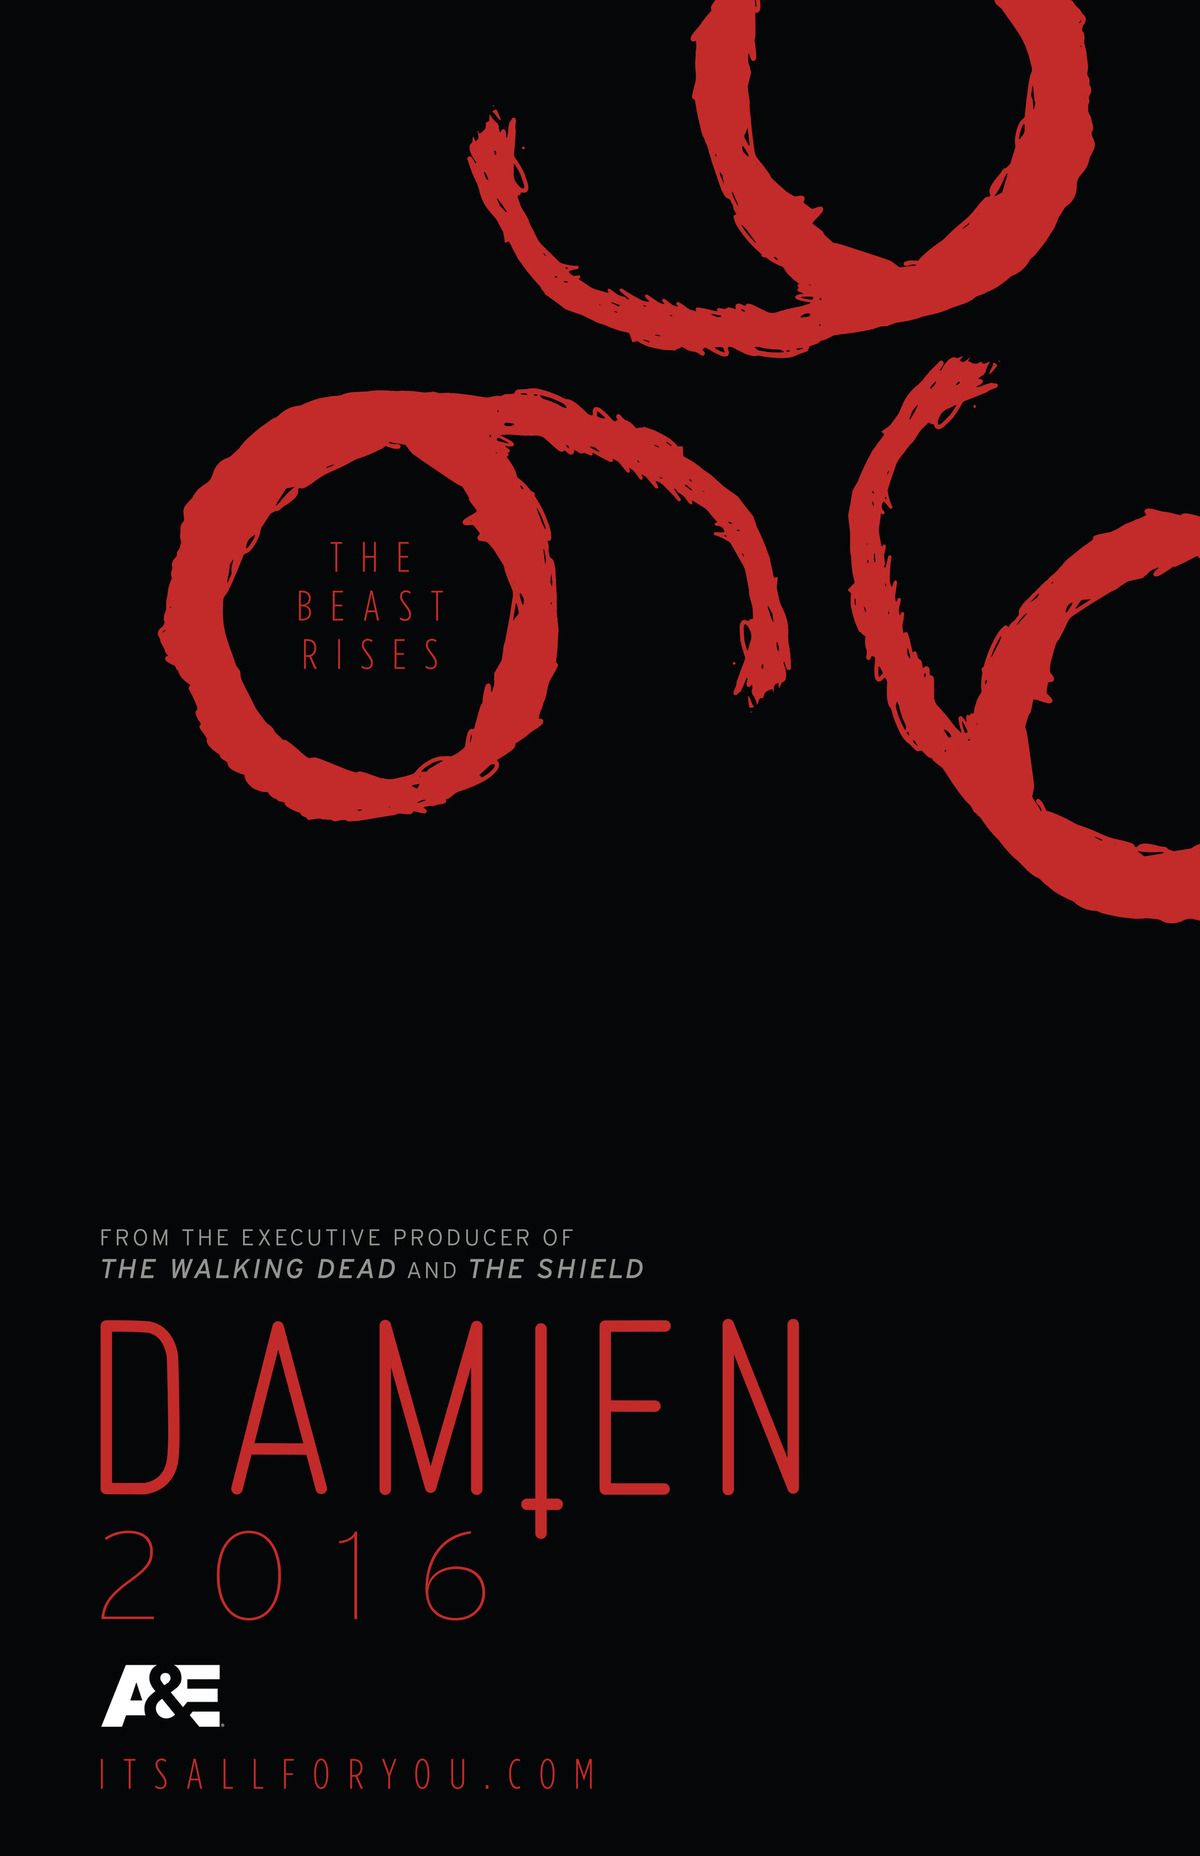 Damien Comic Con Poster